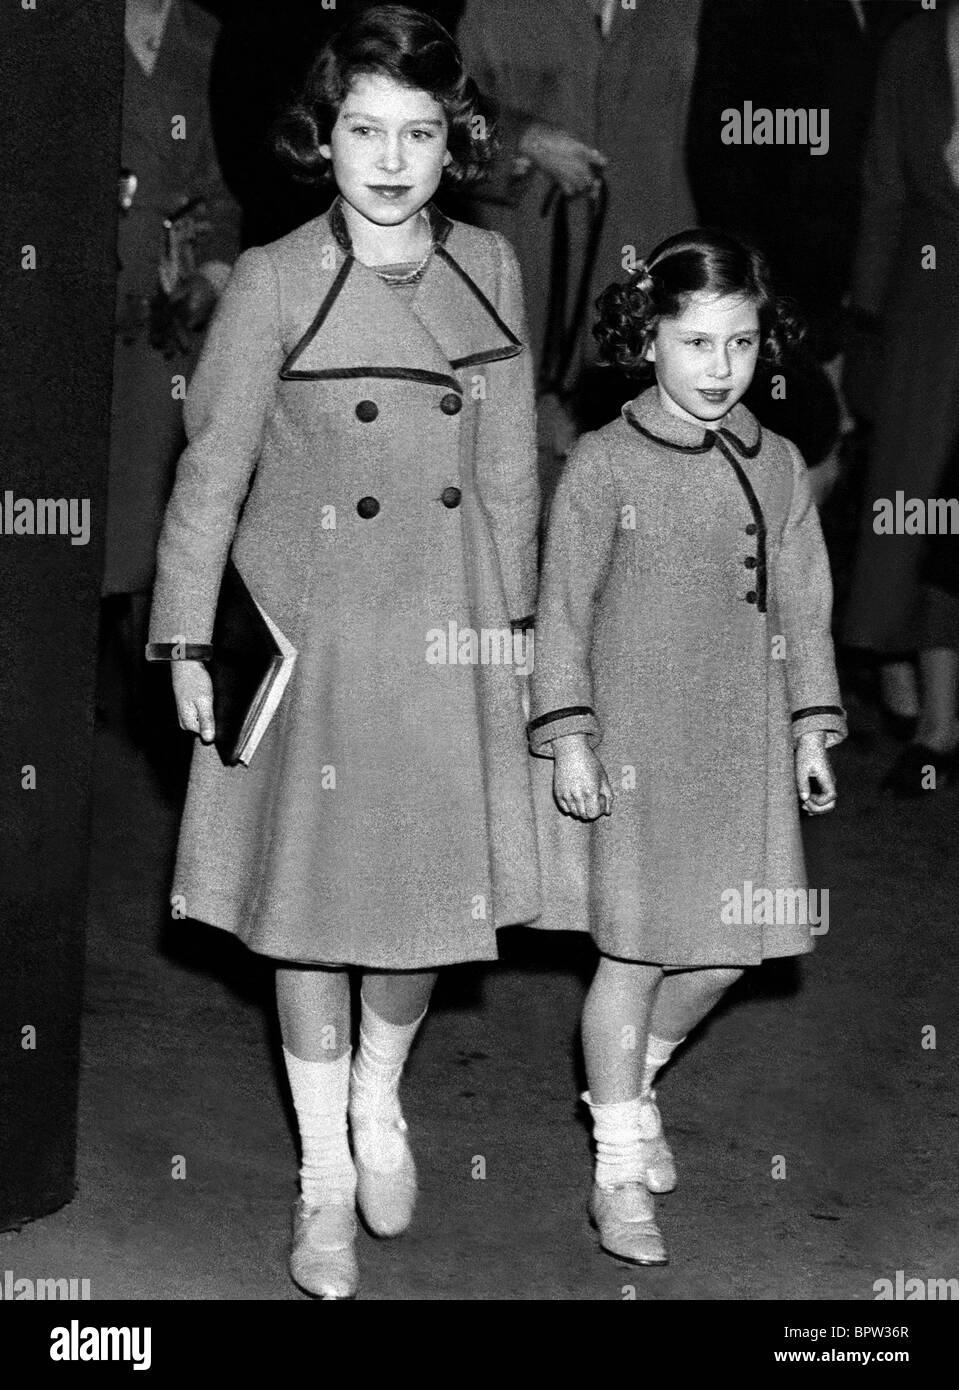 La princesa Elizabeth & Princesa Margarita de la familia real británica el 10 de junio de 1937 Foto de stock